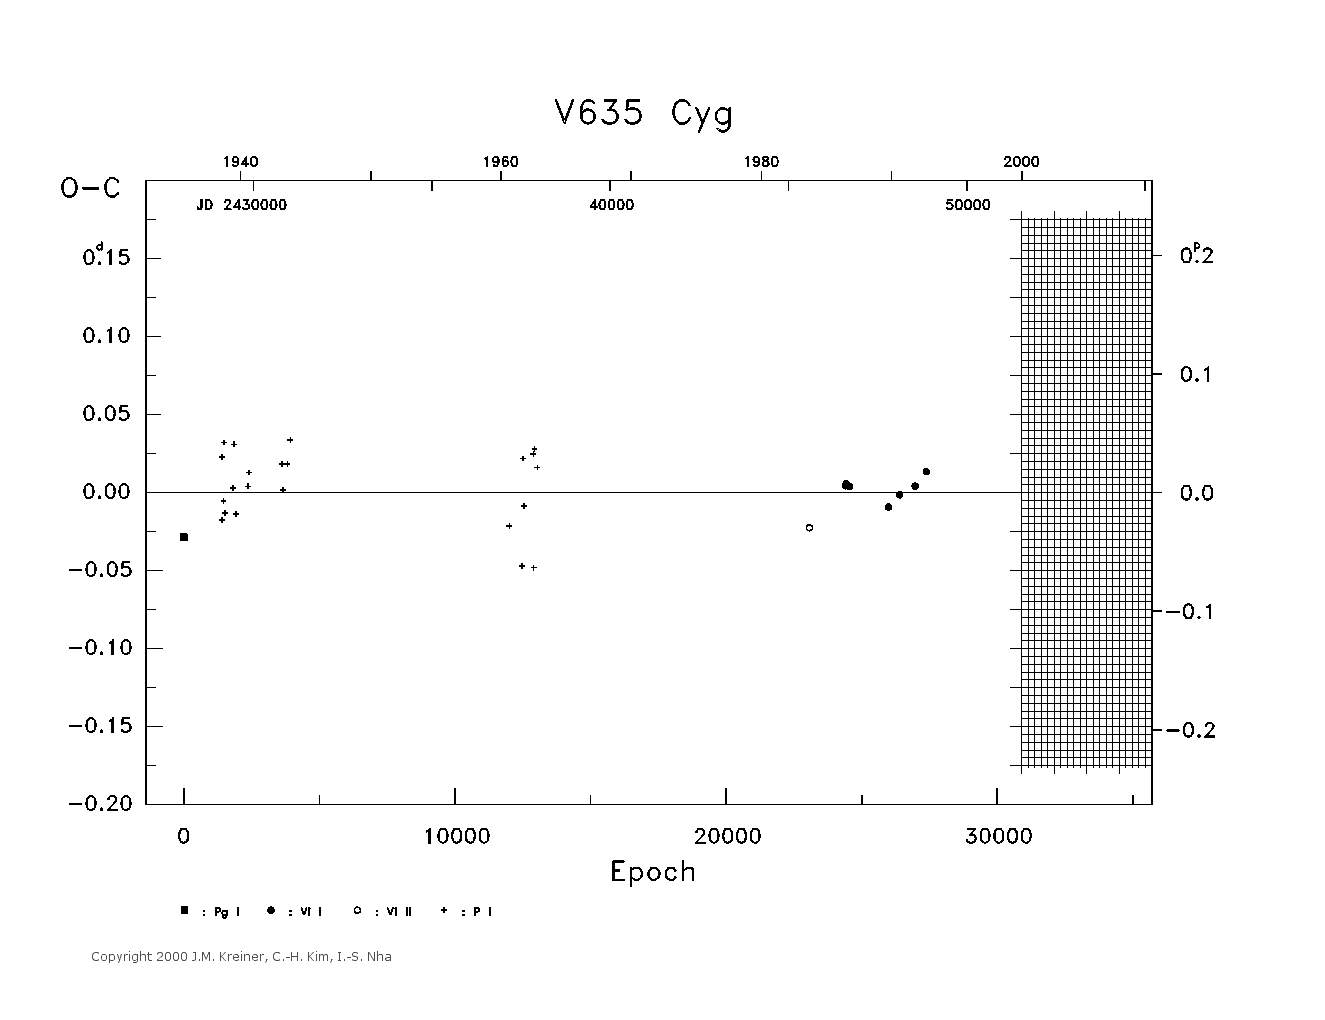 [IMAGE: large V635 CYG O-C diagram]